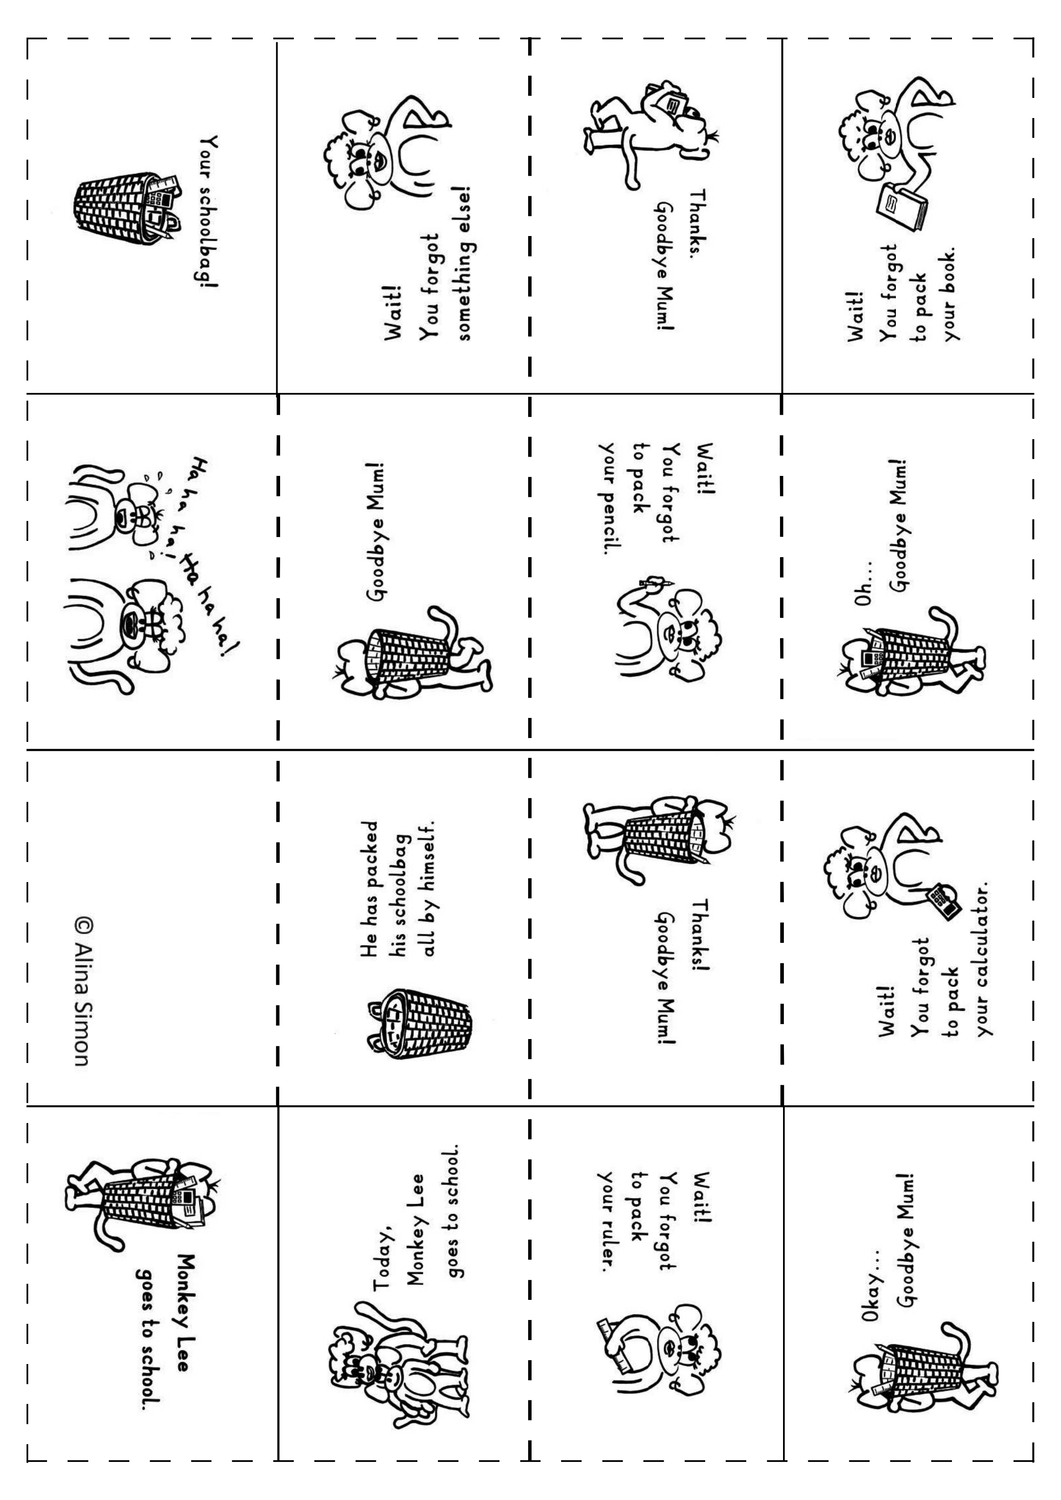 Faltbuch Schoolthings Englisch Grundschule Unterrichtsmaterial Im Fach Englisch Wortkarte Grundschule Englisch Grundschule